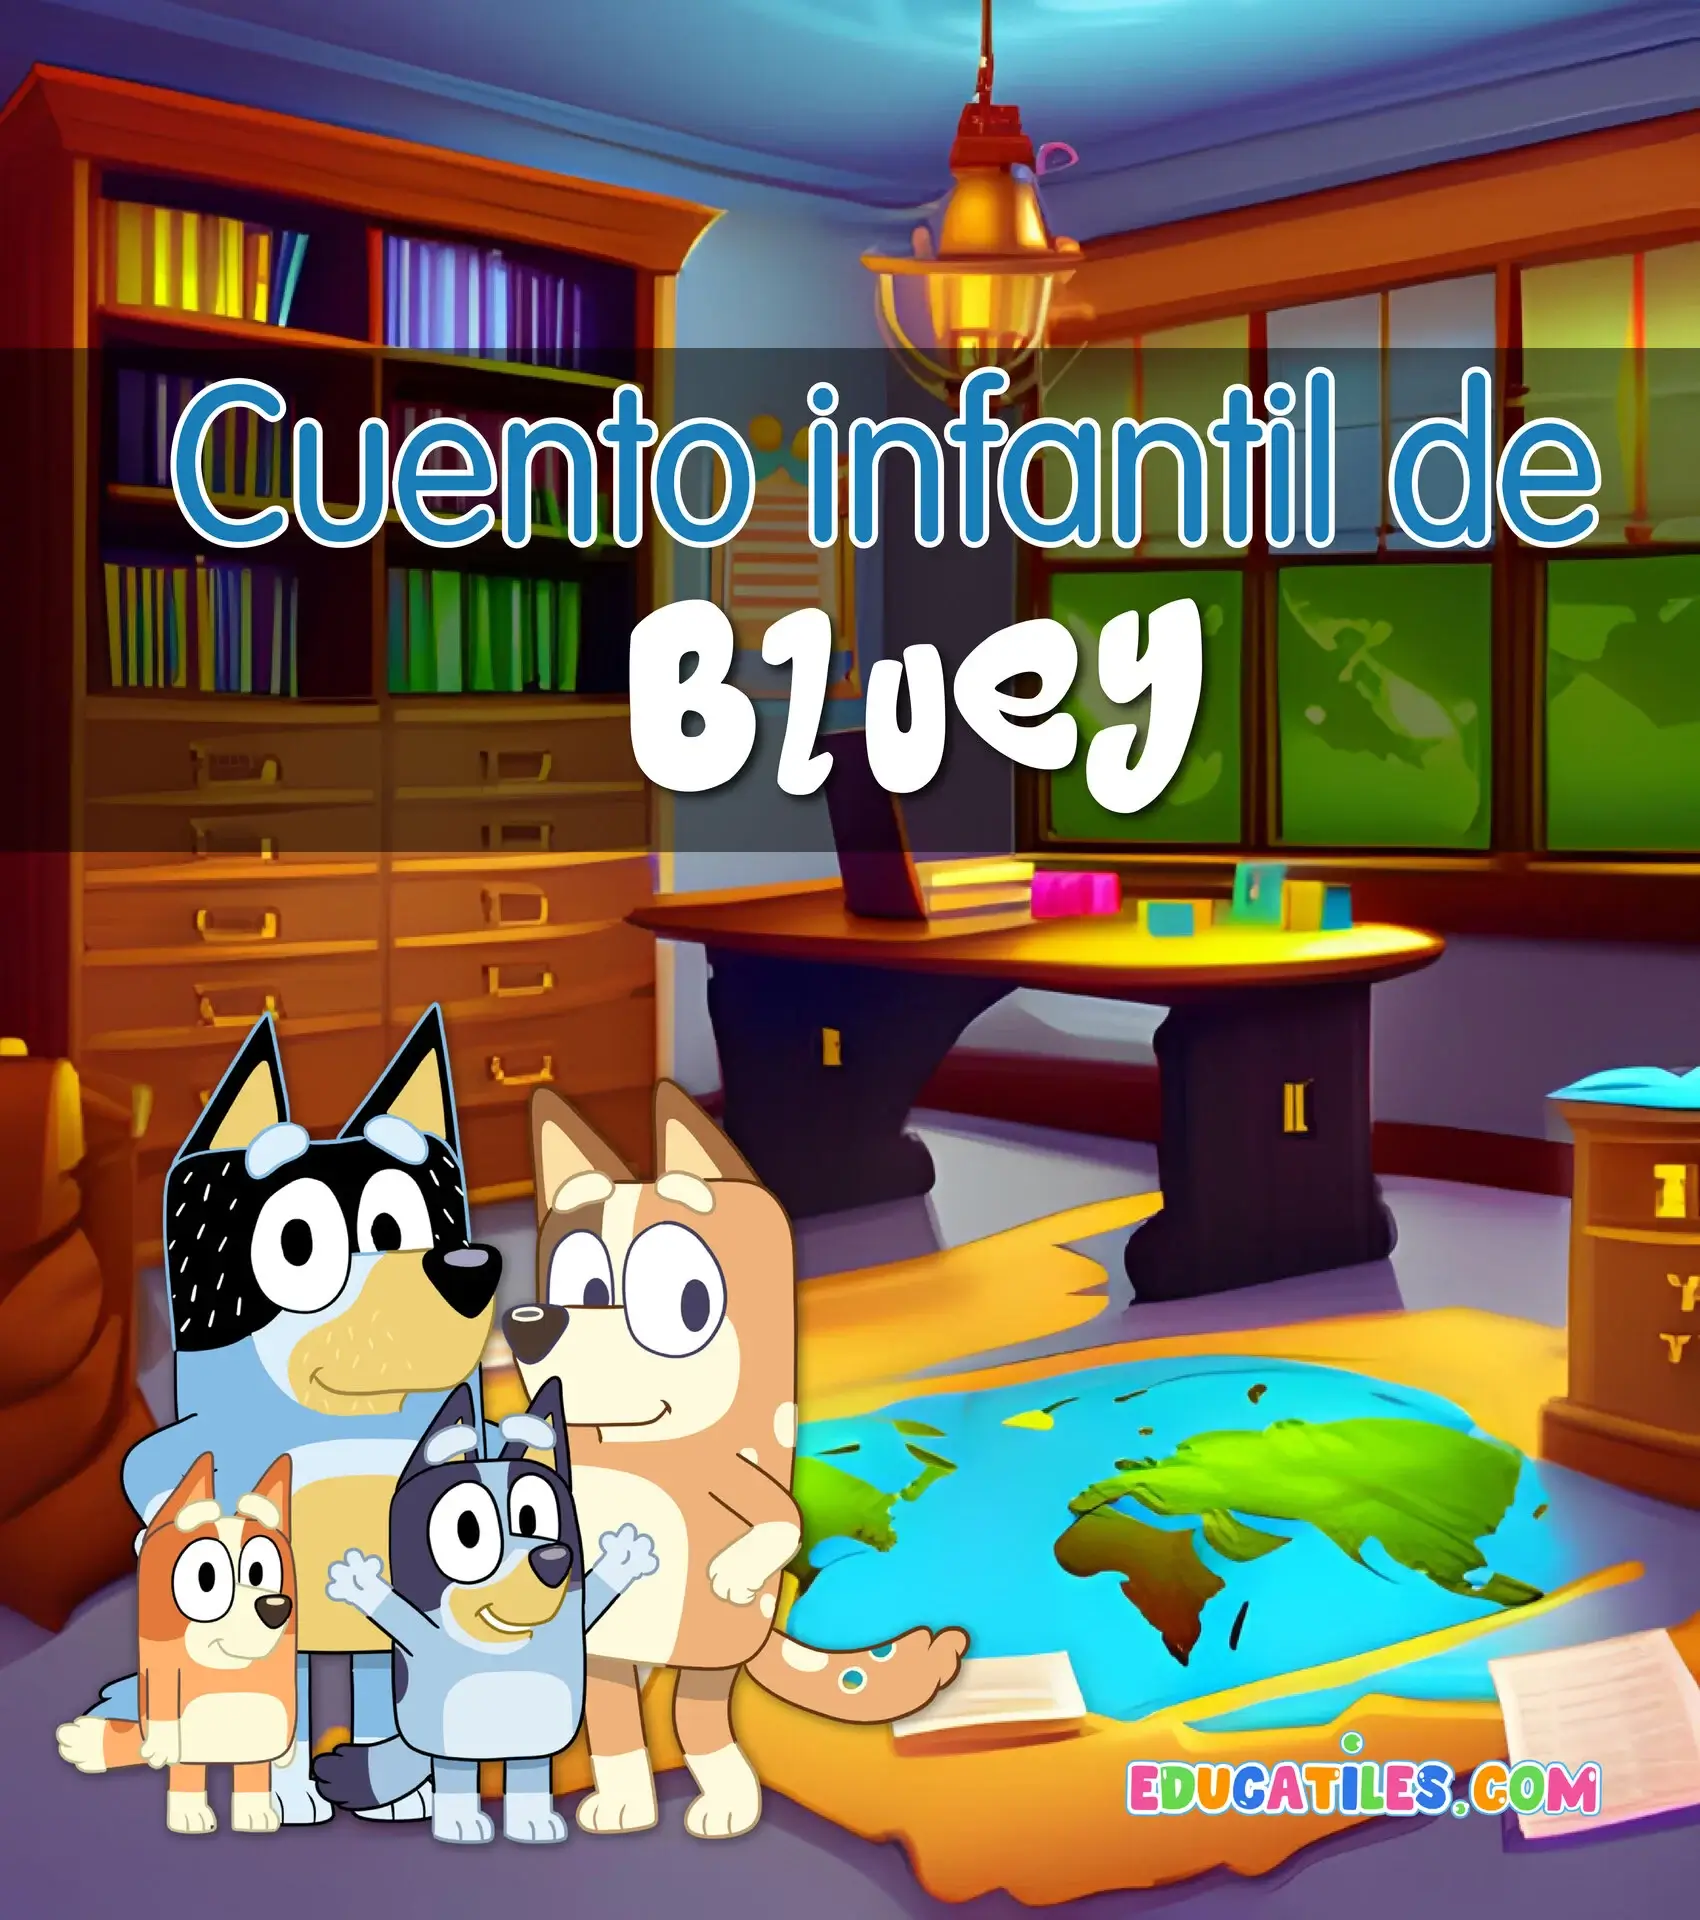 Cuento infantil de Bluey - Cuentos en español, Materiales educativos,  Historias cortas para niños y Orientación familiar